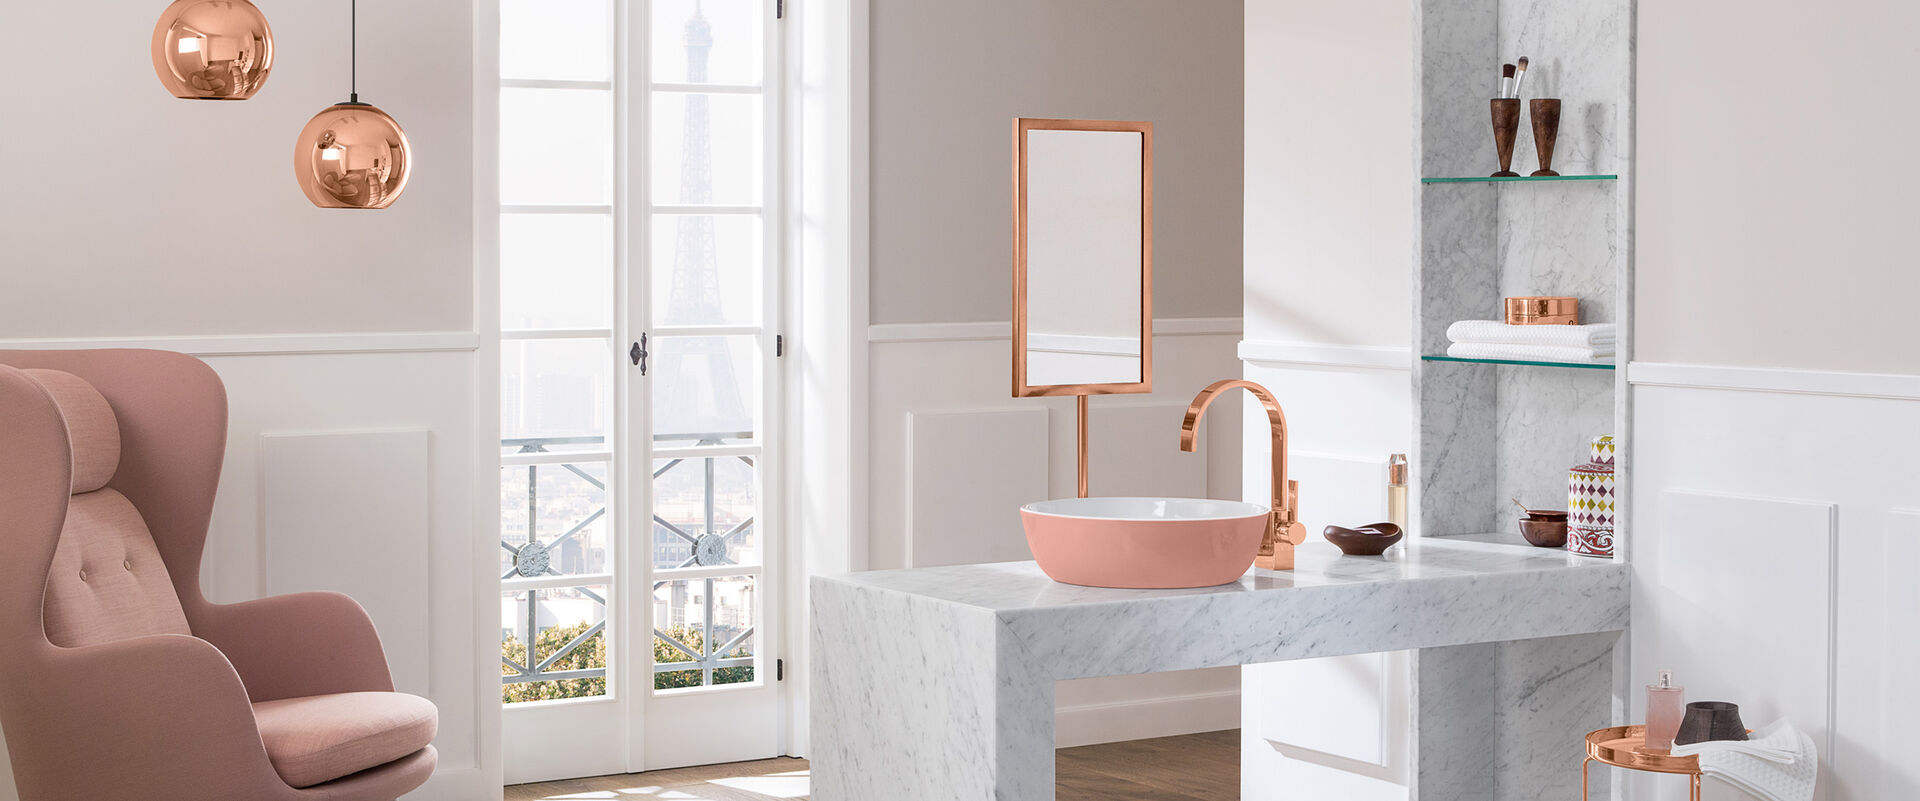 Helles Badezimmer mit rosafarbenen Elementen und Waschbecken Artis von Villeroy und Boch. Das Waschbecken steht auf einem steinernen Waschtisch, daneben befindet sich ein Regal. Links steht ein großer, rosaner Sessel.